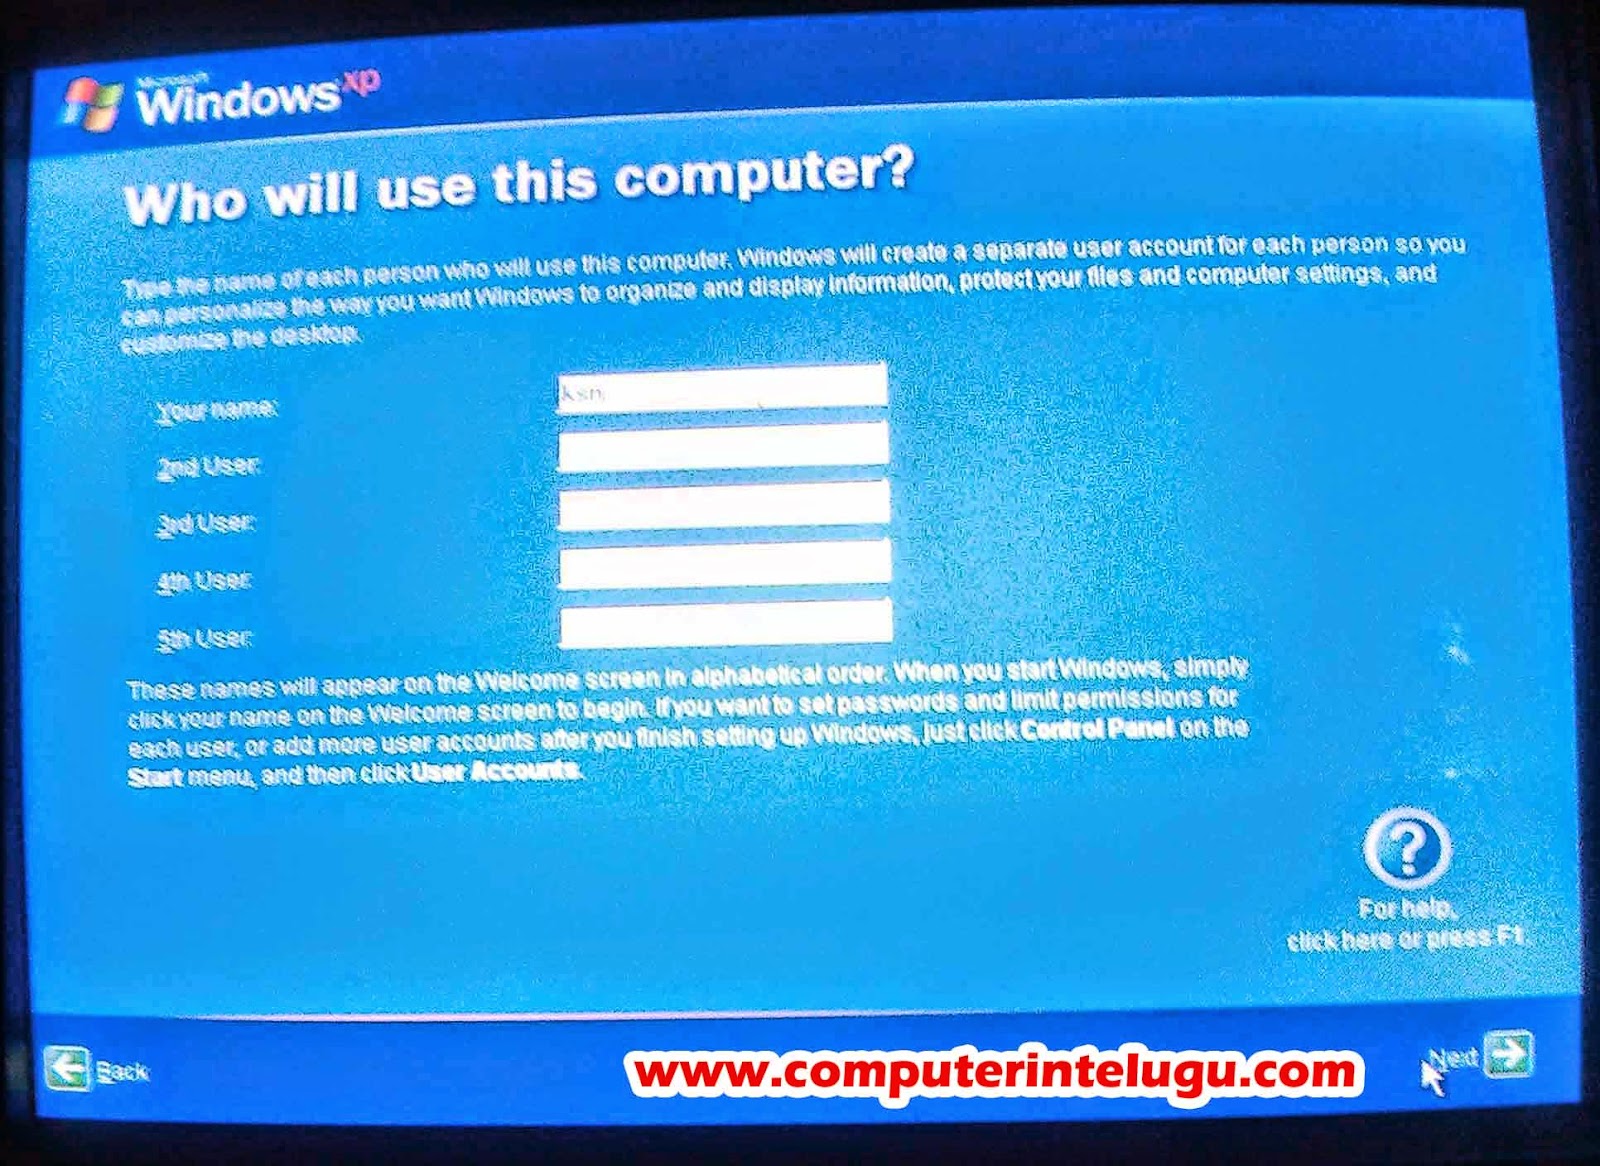 computer in telugu